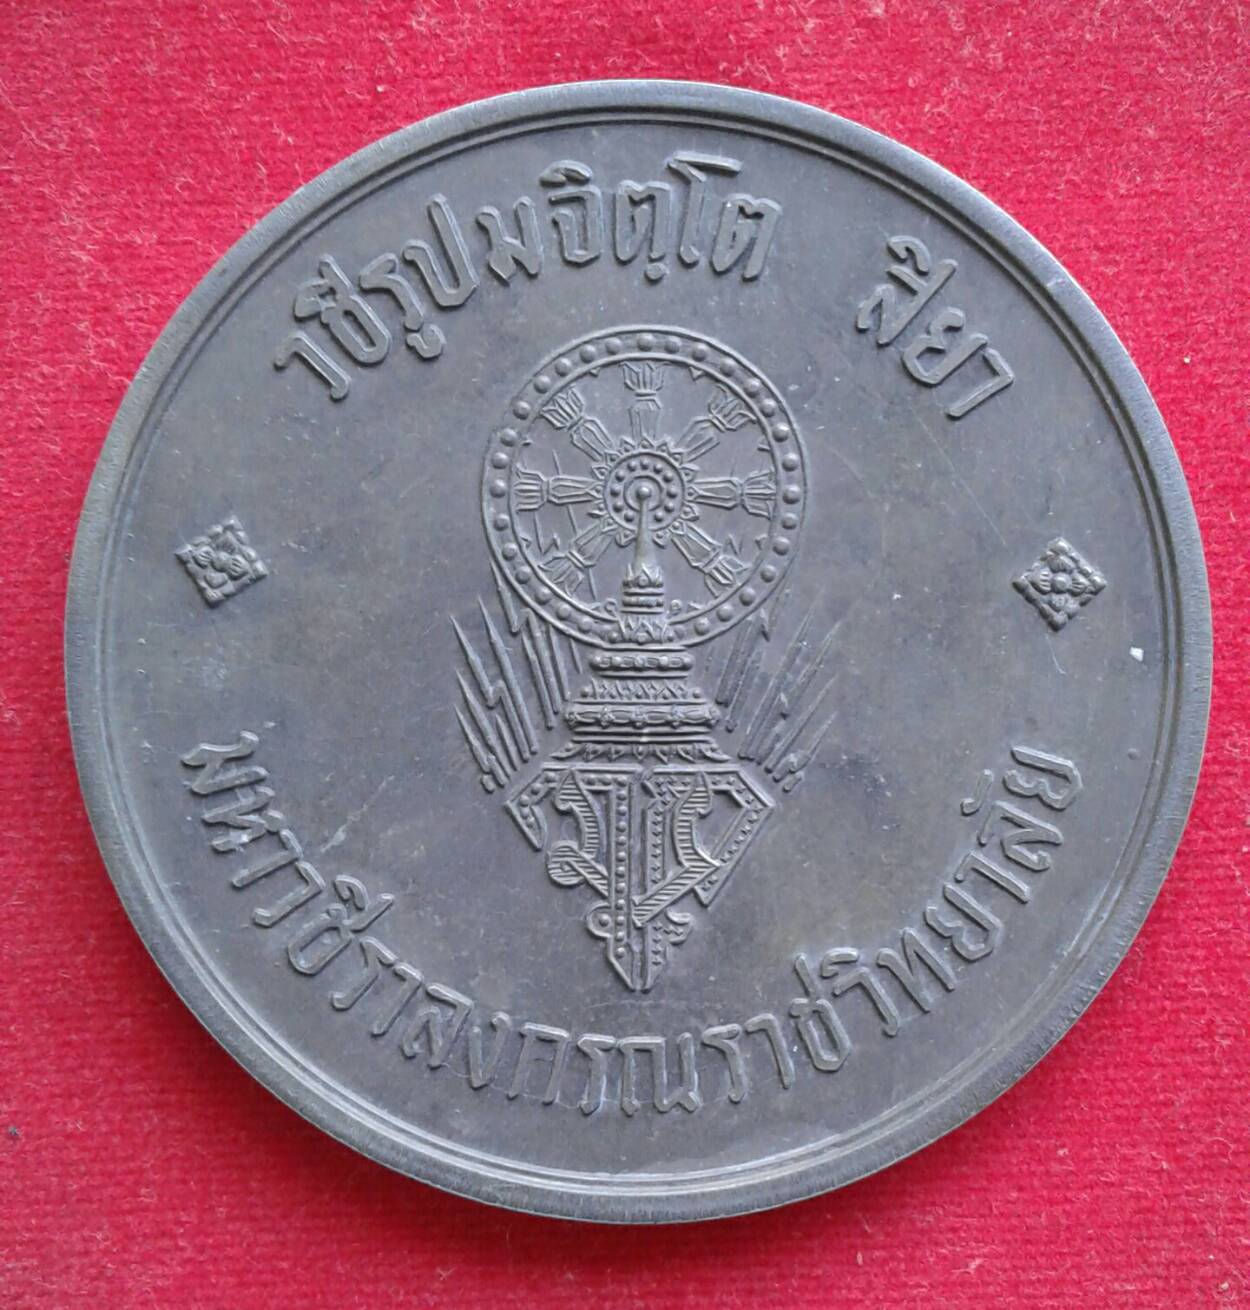 เหรียญบาตรน้ำมนต์ หลวงปู่แหวน สุจินโณ พิธีมหาวชิราวุธราชวิทยาลัย พ.ศ.2519  เนื้อดีบุกผสม คม ชัด ลึก